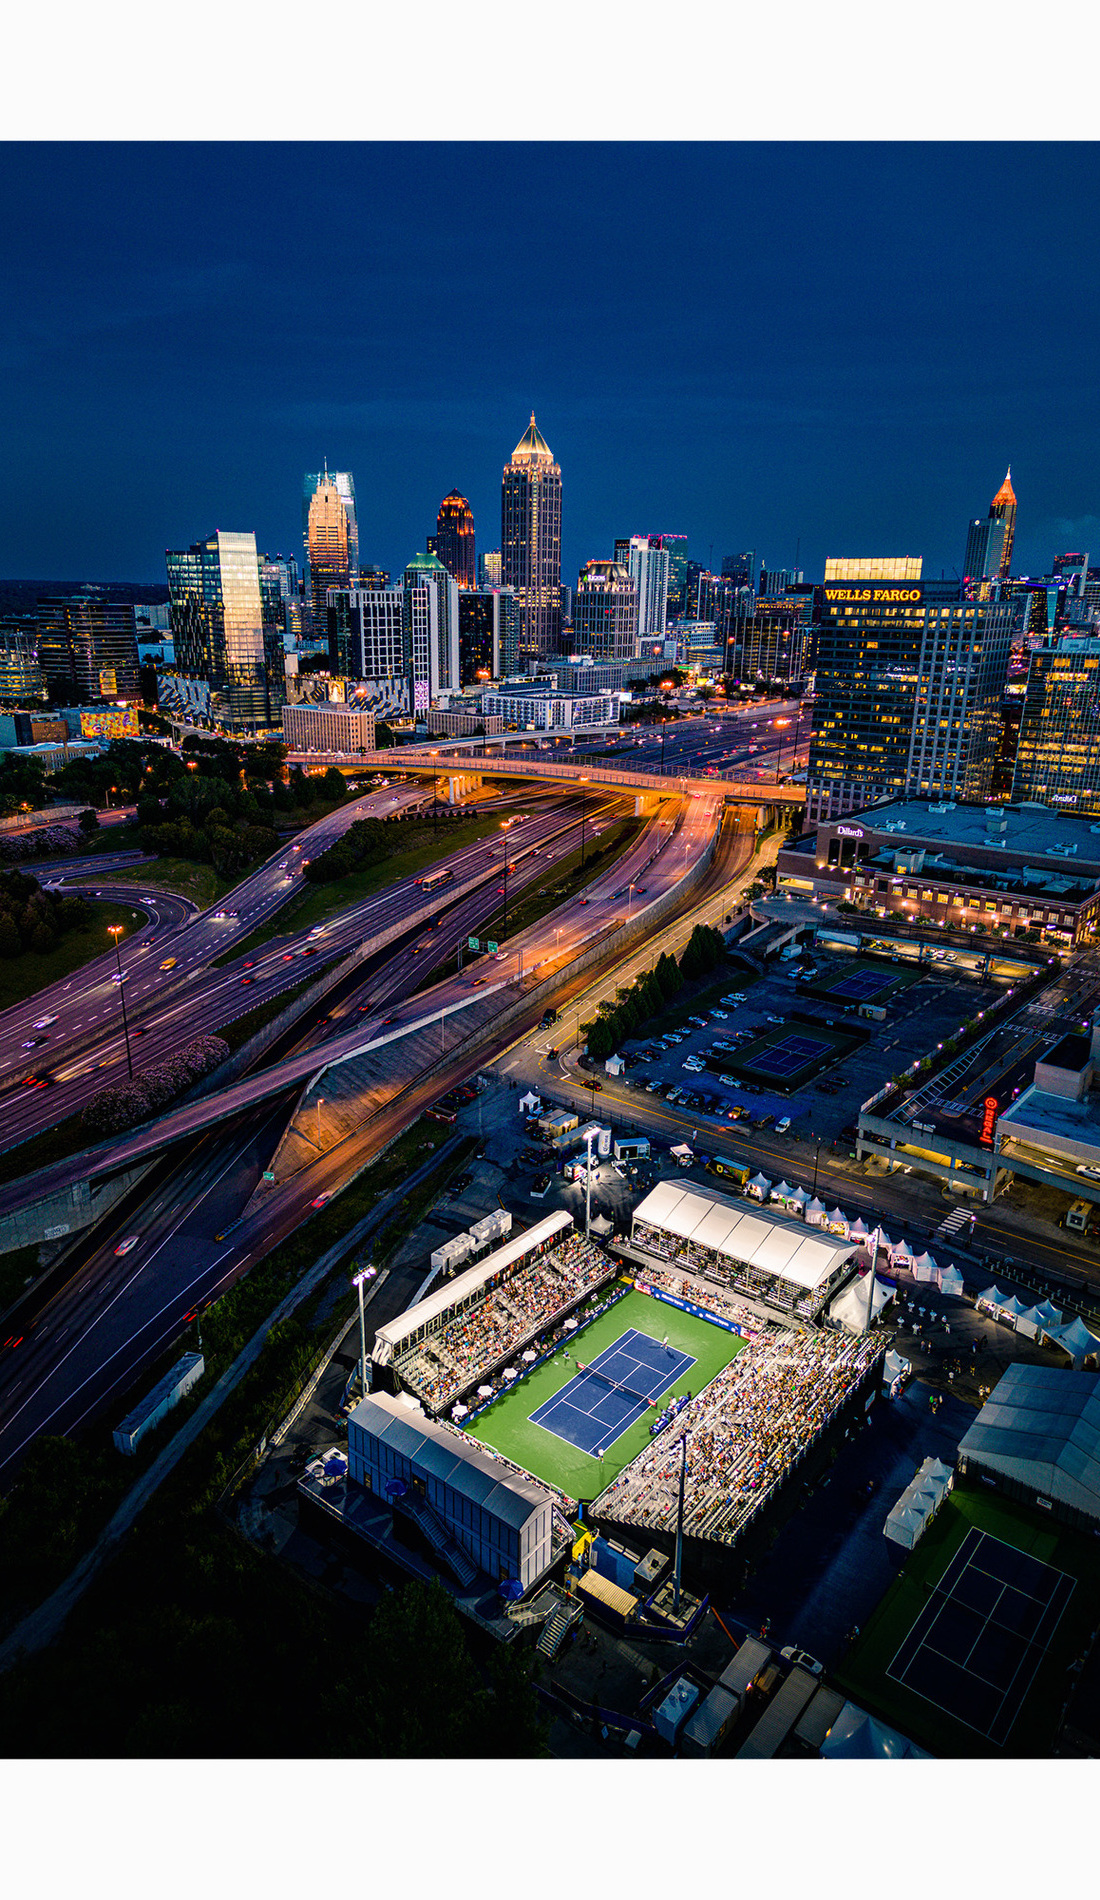 A Atlanta Open live event